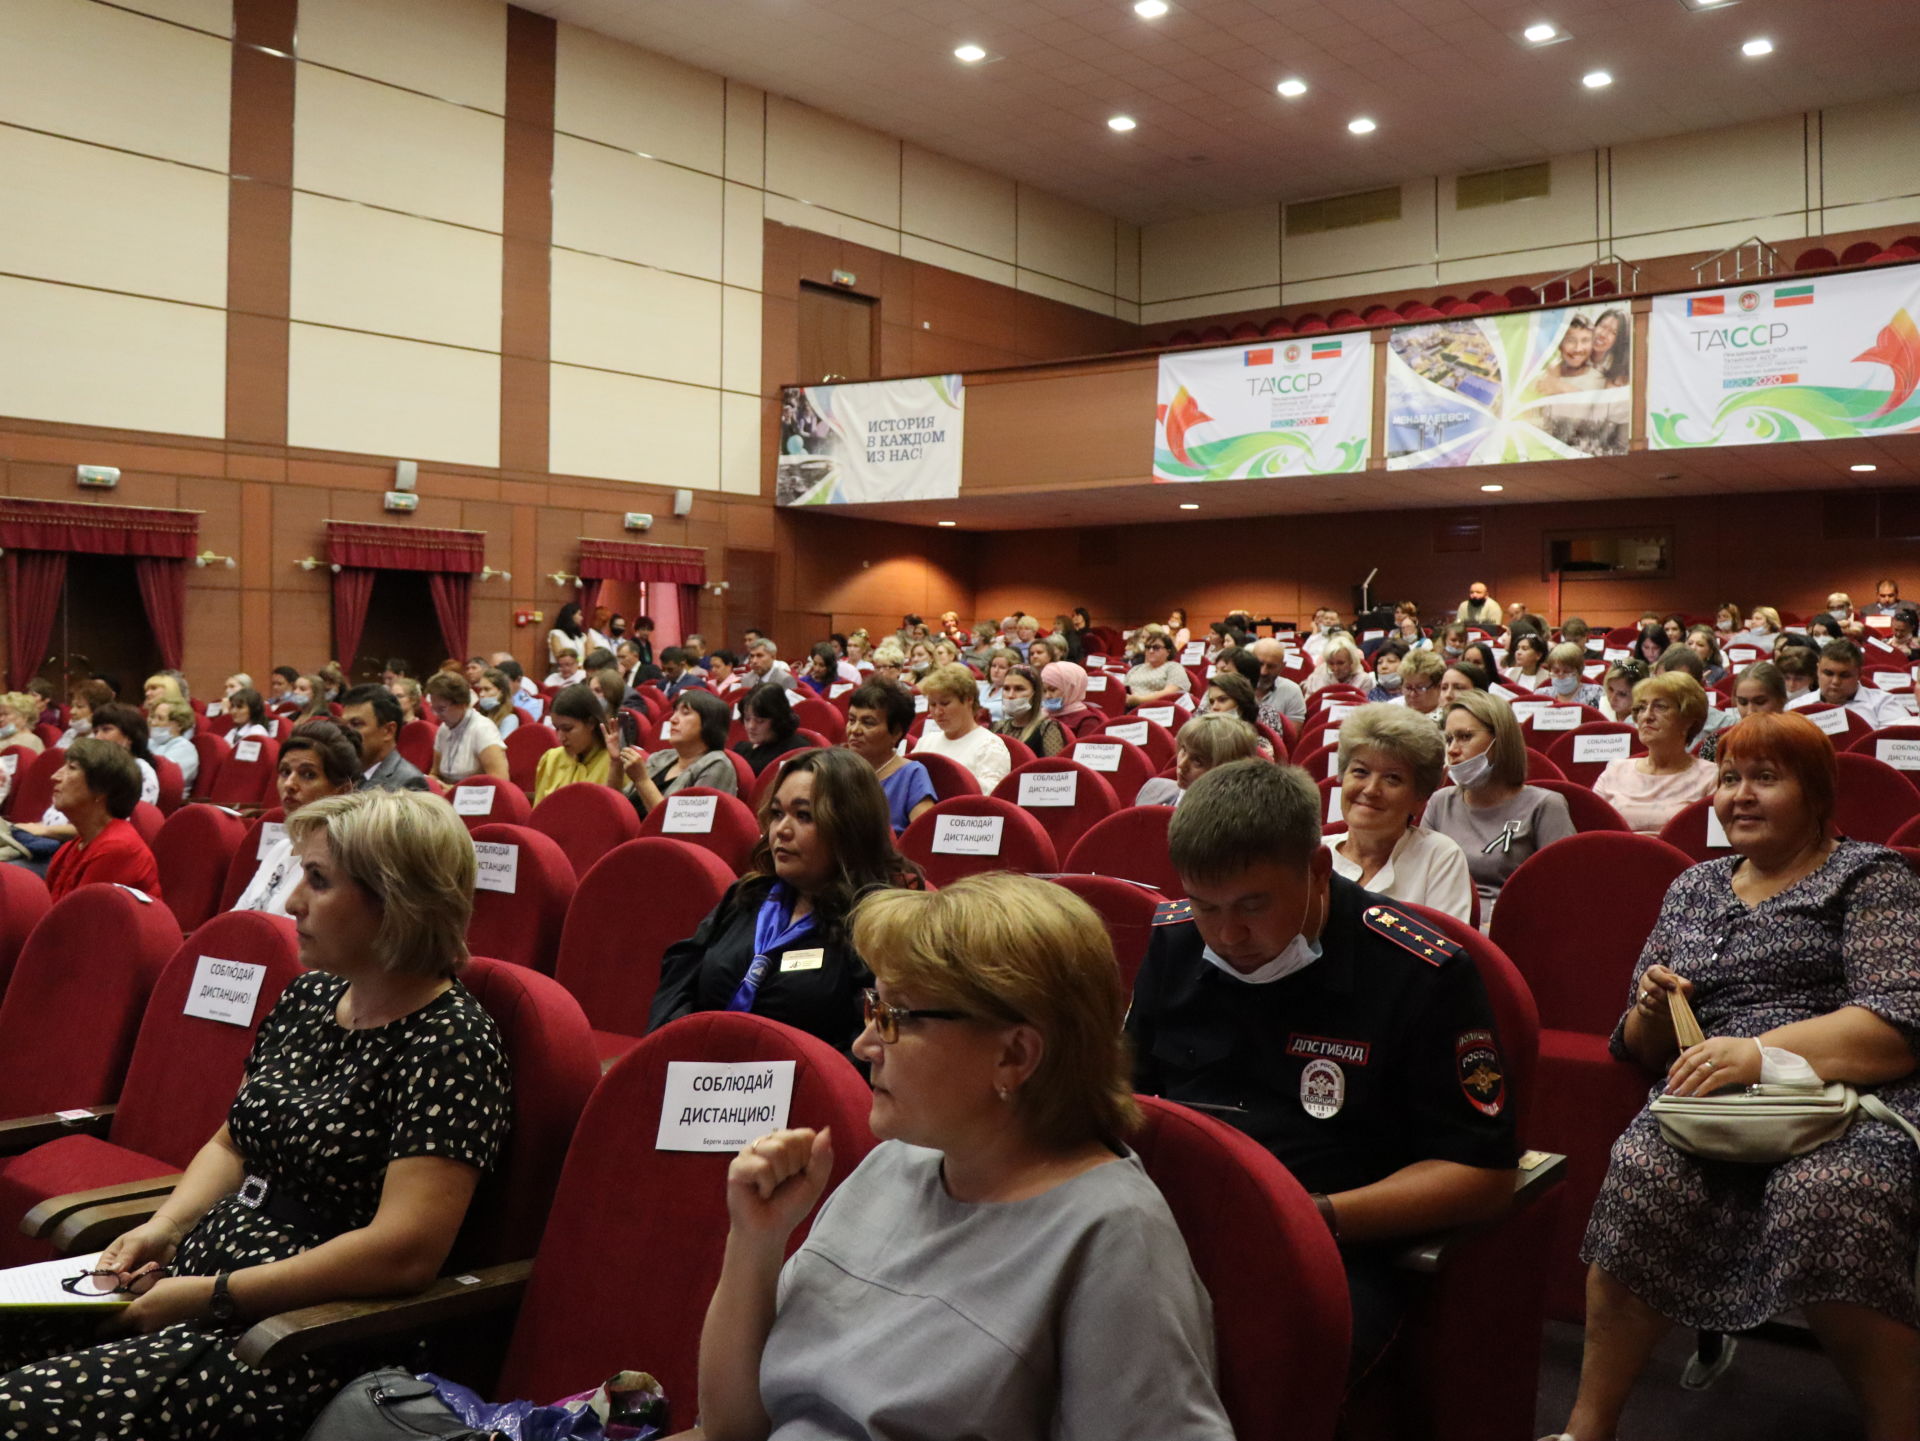 В Менделеевске состоялось августовское совещание учителей